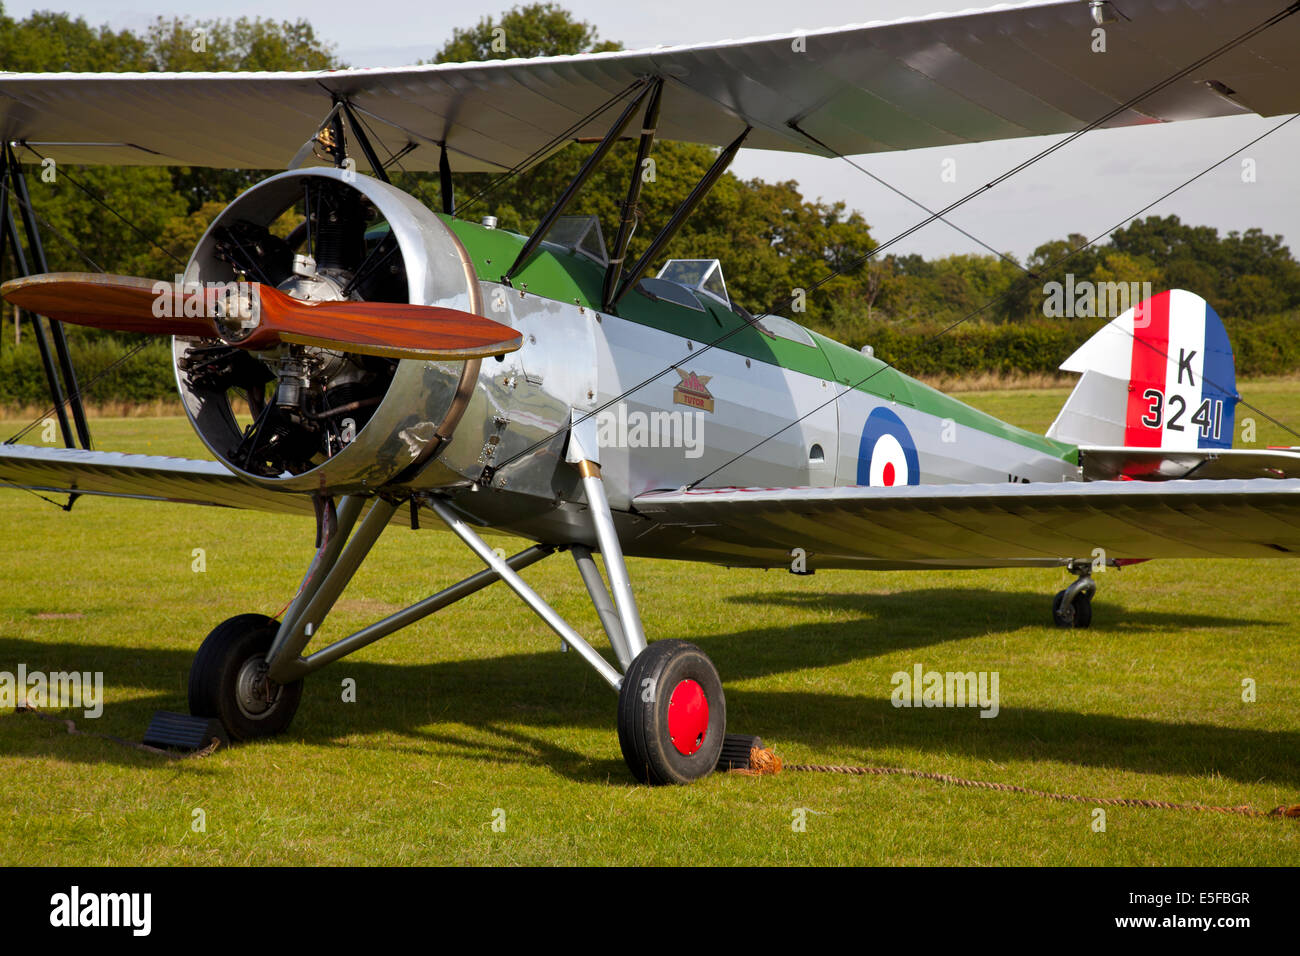 England UK vers 2014 L'Avro Tutor K3241 Bi avion amarré à un spectacle de l'air vintage avant l'affichage Banque D'Images